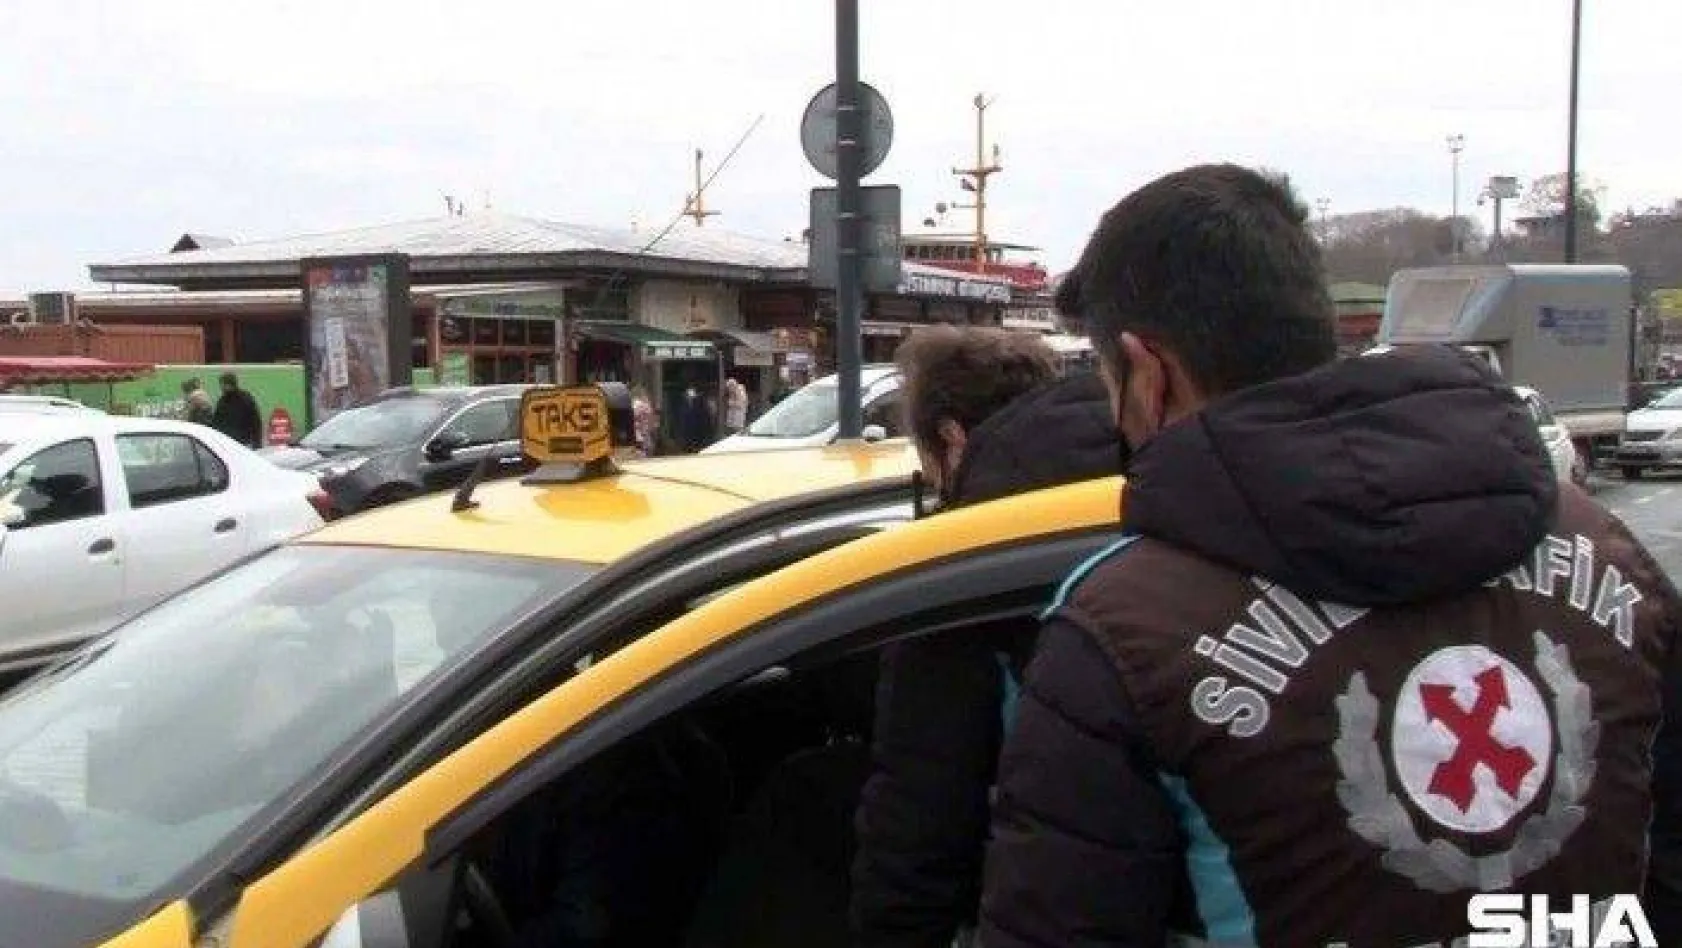 Taksicinin 250 liralık taksimetre oyununu polis bozdu